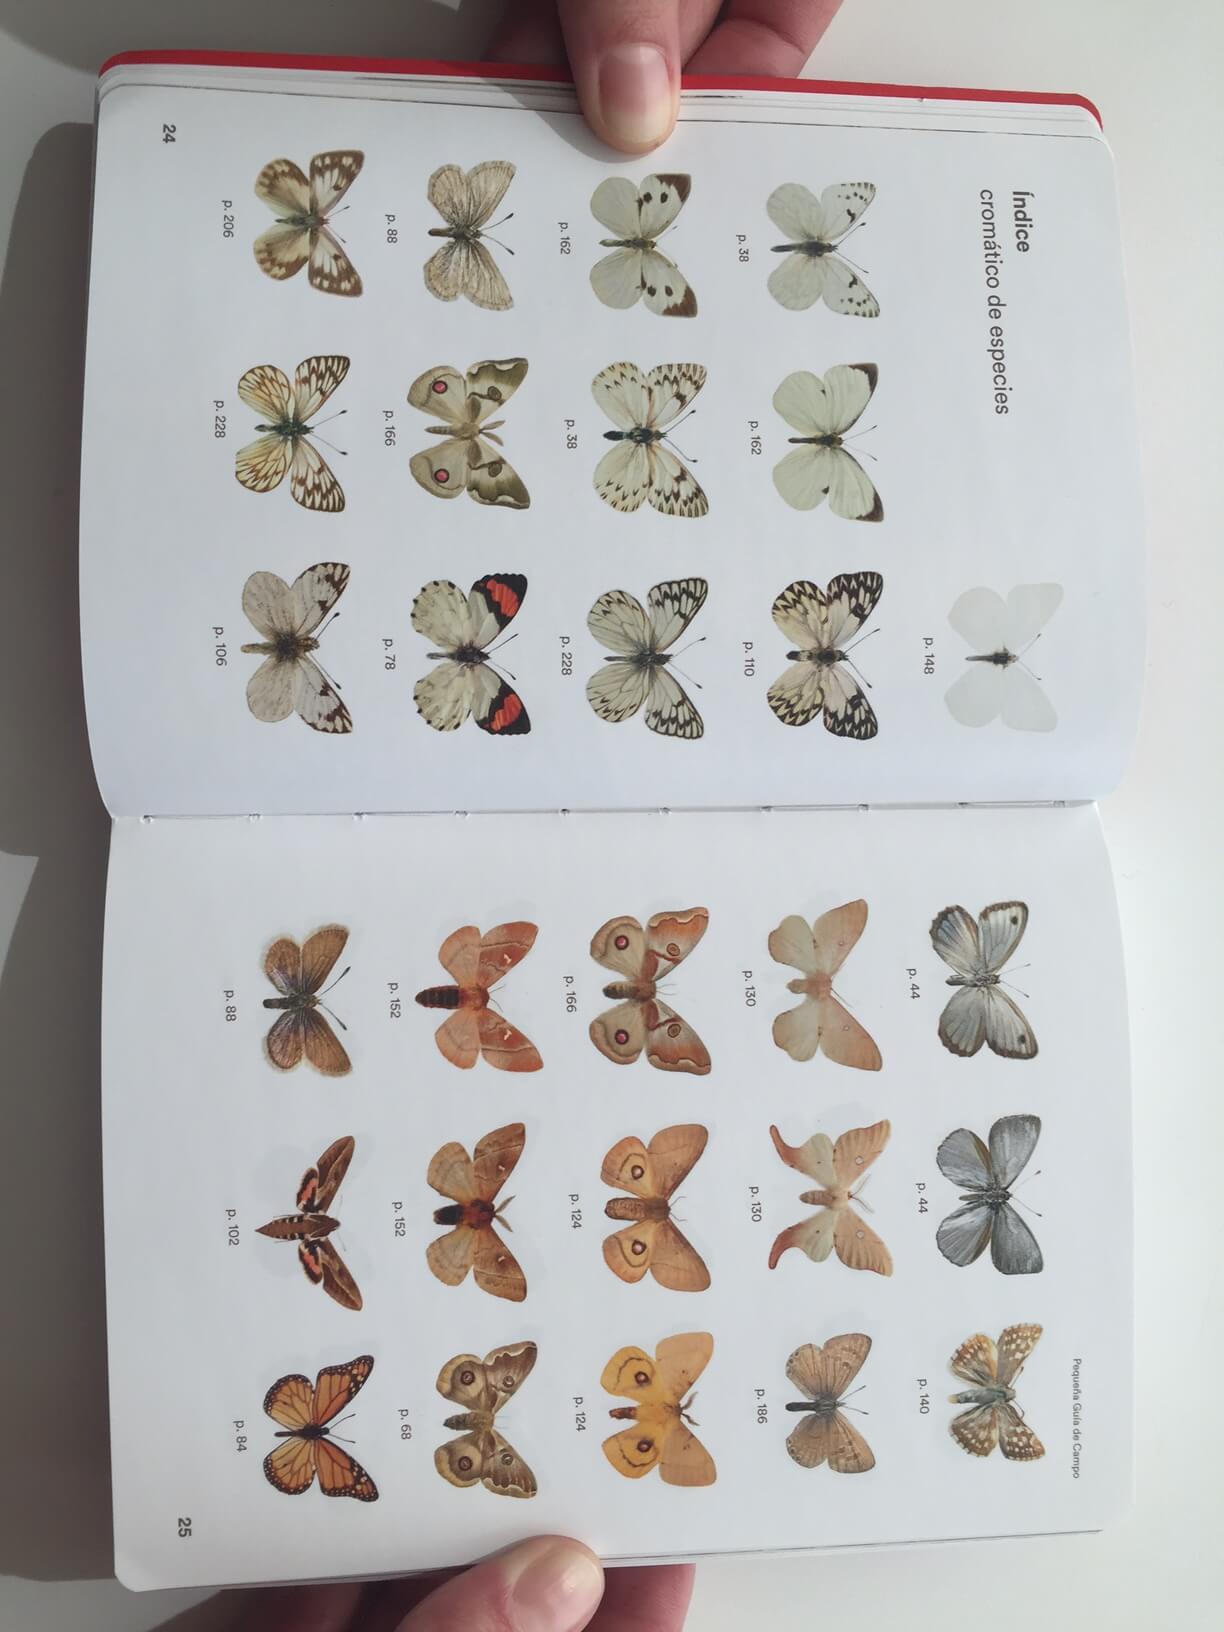 Las distintas especies están organizadas por su color en el índice de especies de la “Pequeña guía de campo, mariposas de Chile”.